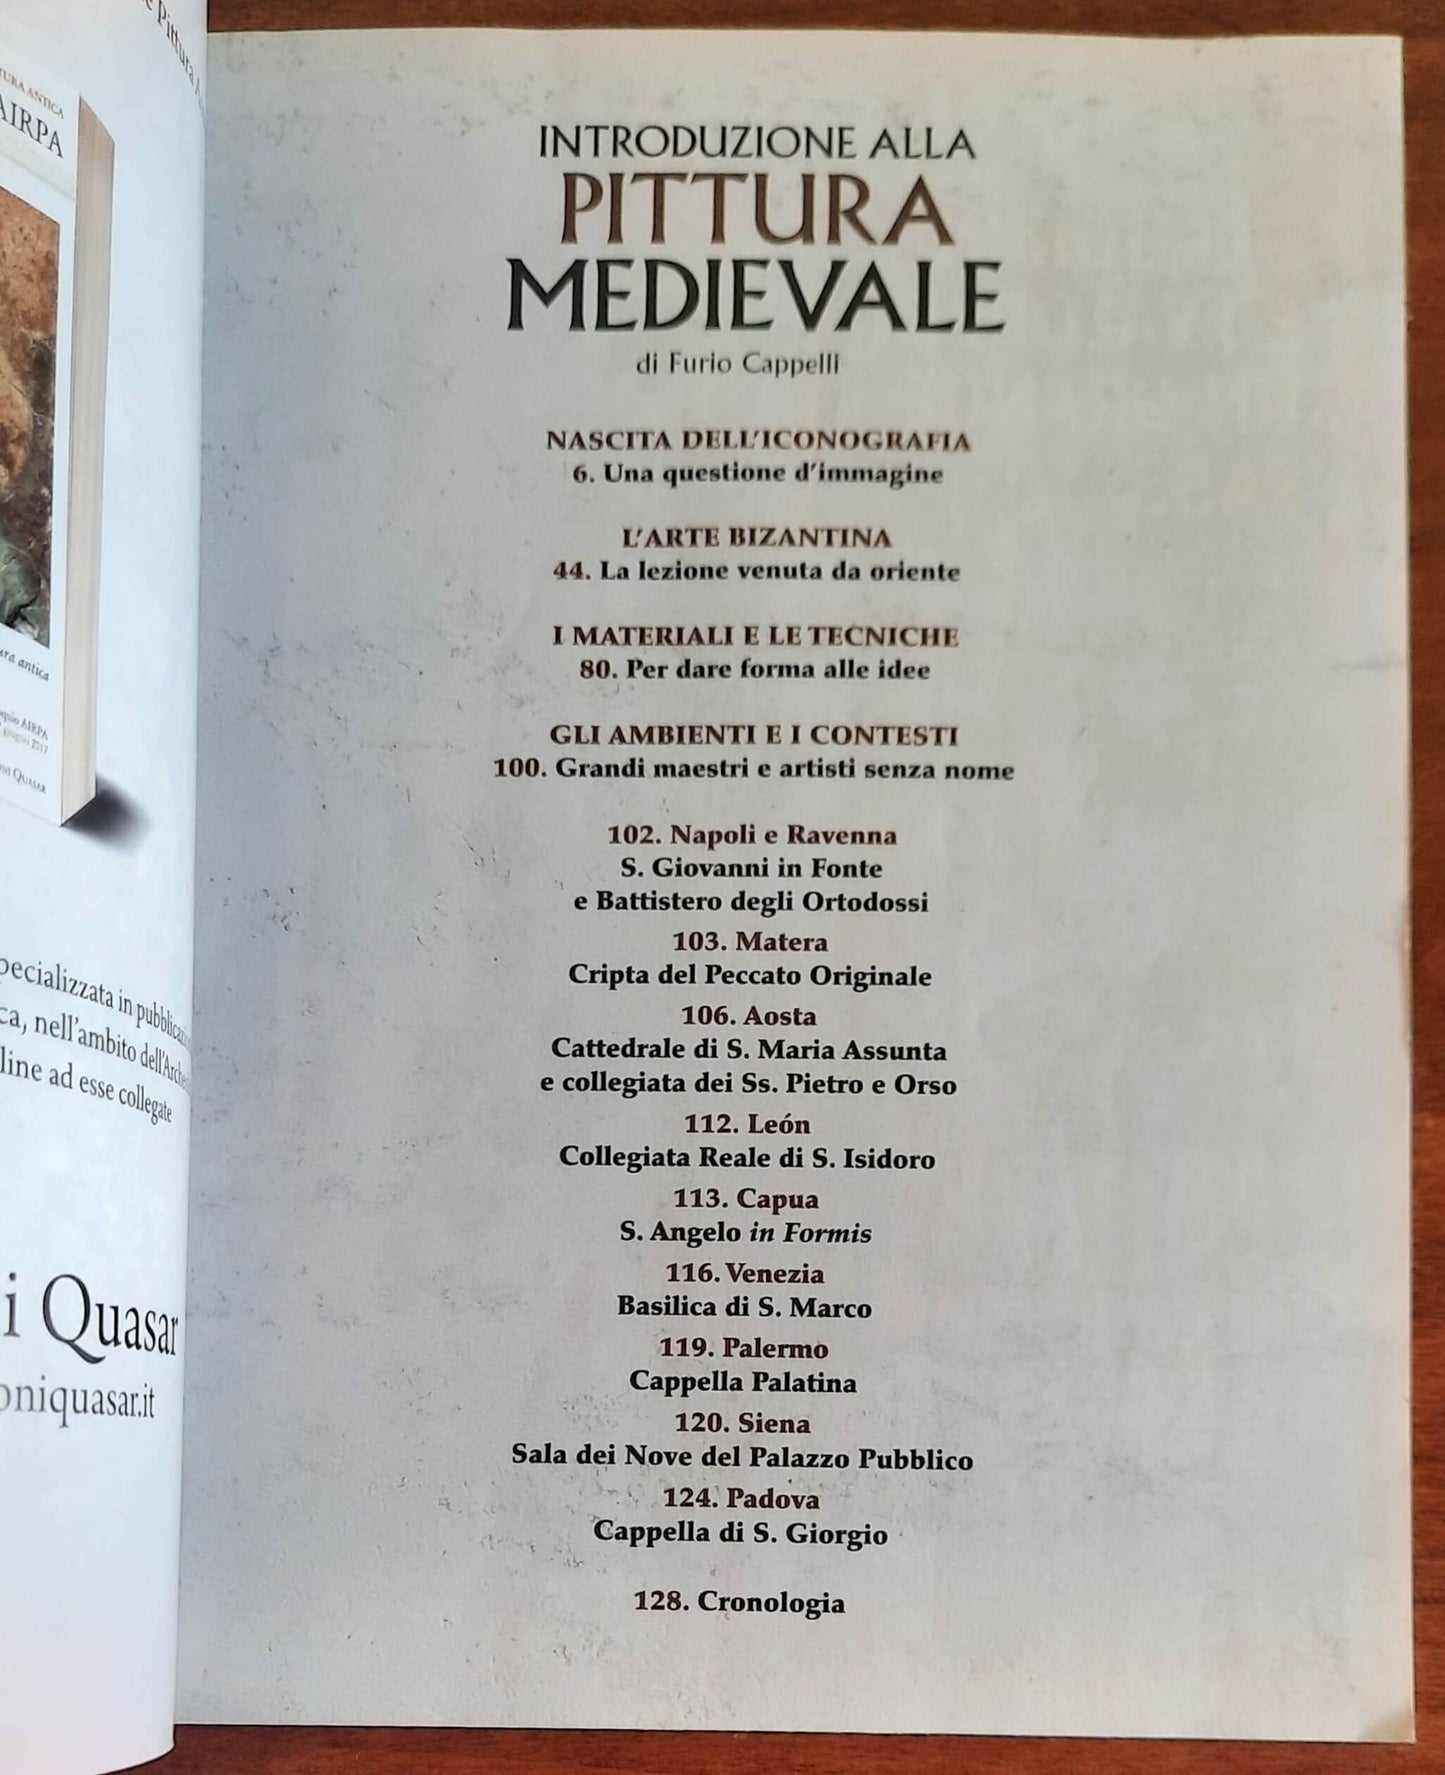 Medioevo Dossier Mag/Giu 2020 (Introduzione alla pittura medievale)